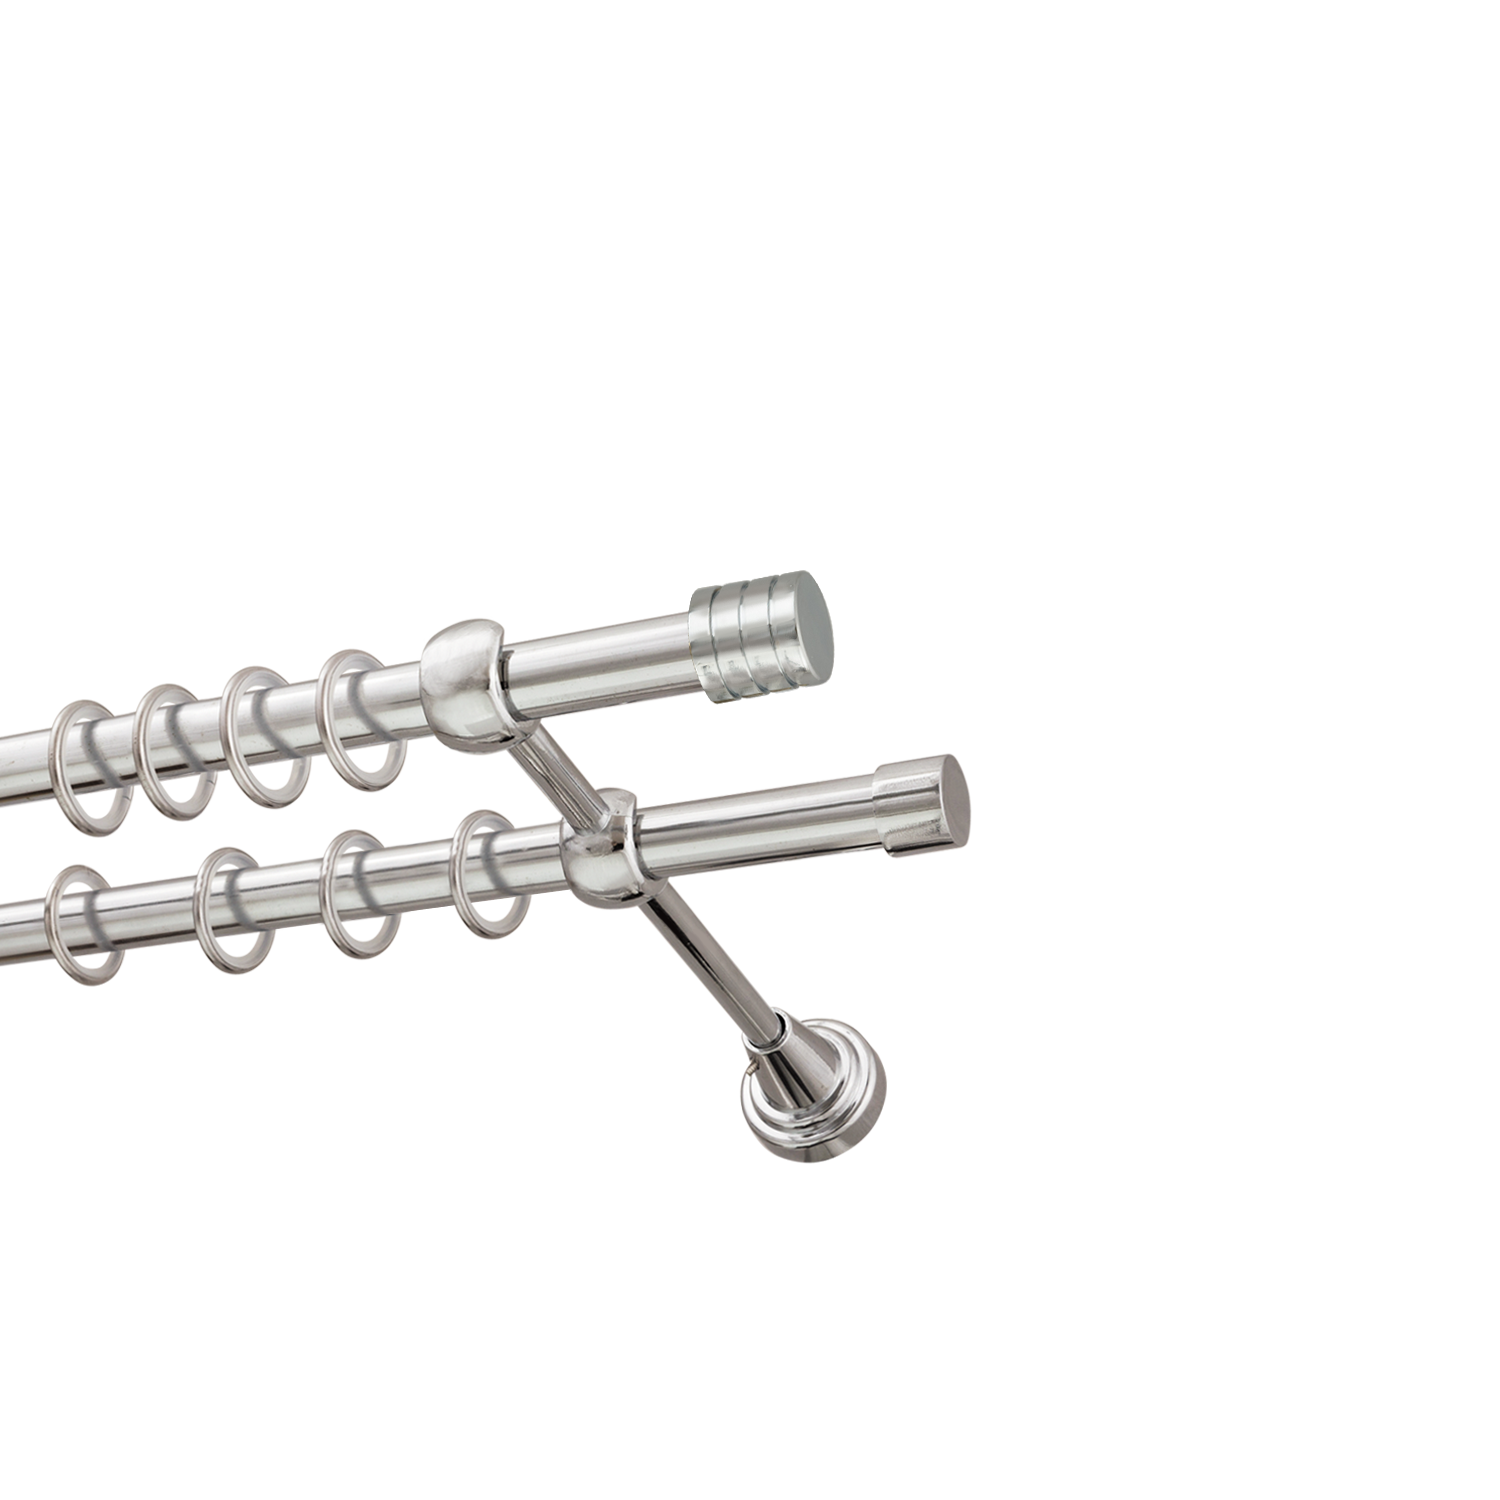 Металлический карниз для штор Подиум, двухрядный 16/16 мм, серебро, гладкая штанга, длина 160 см